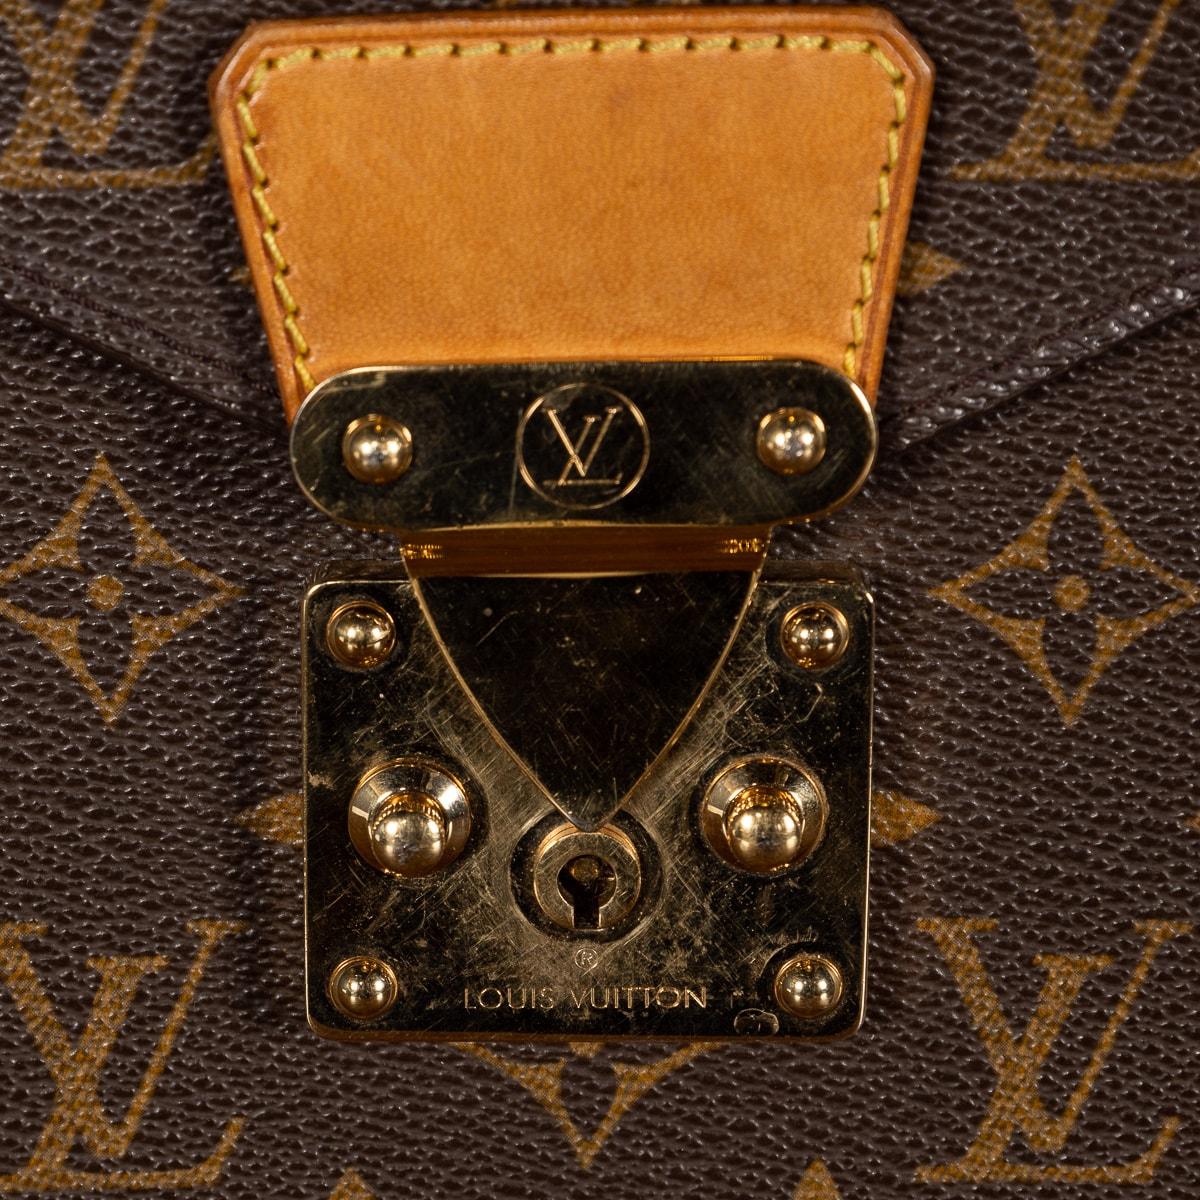 Louis Vuitton Soft Briefcase in Monogram Canvas 2